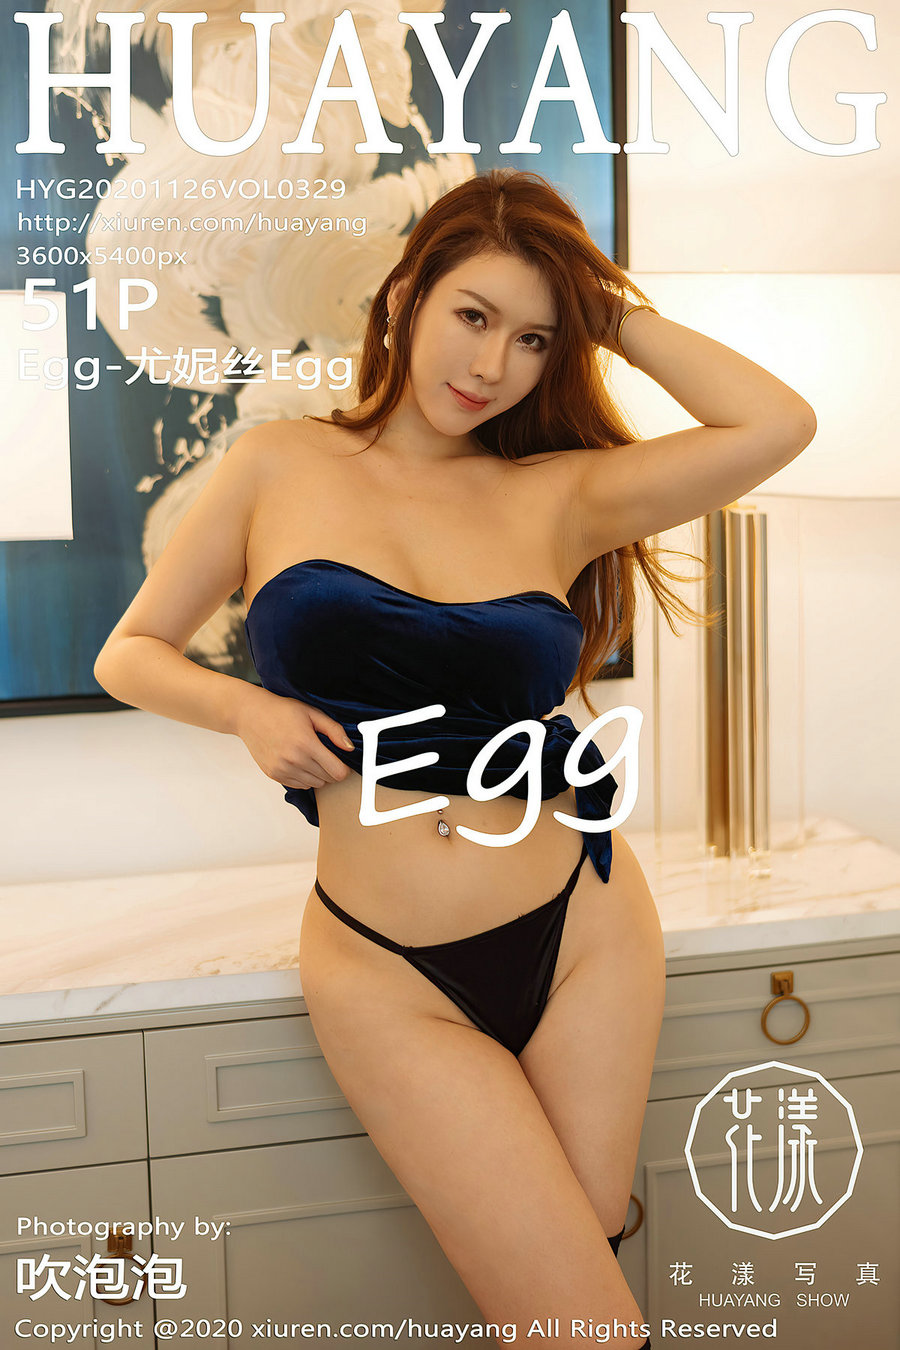 [HuaYang]花漾 2020.11.26 Vol.329 Egg-尤妮丝Egg [51P445MB]